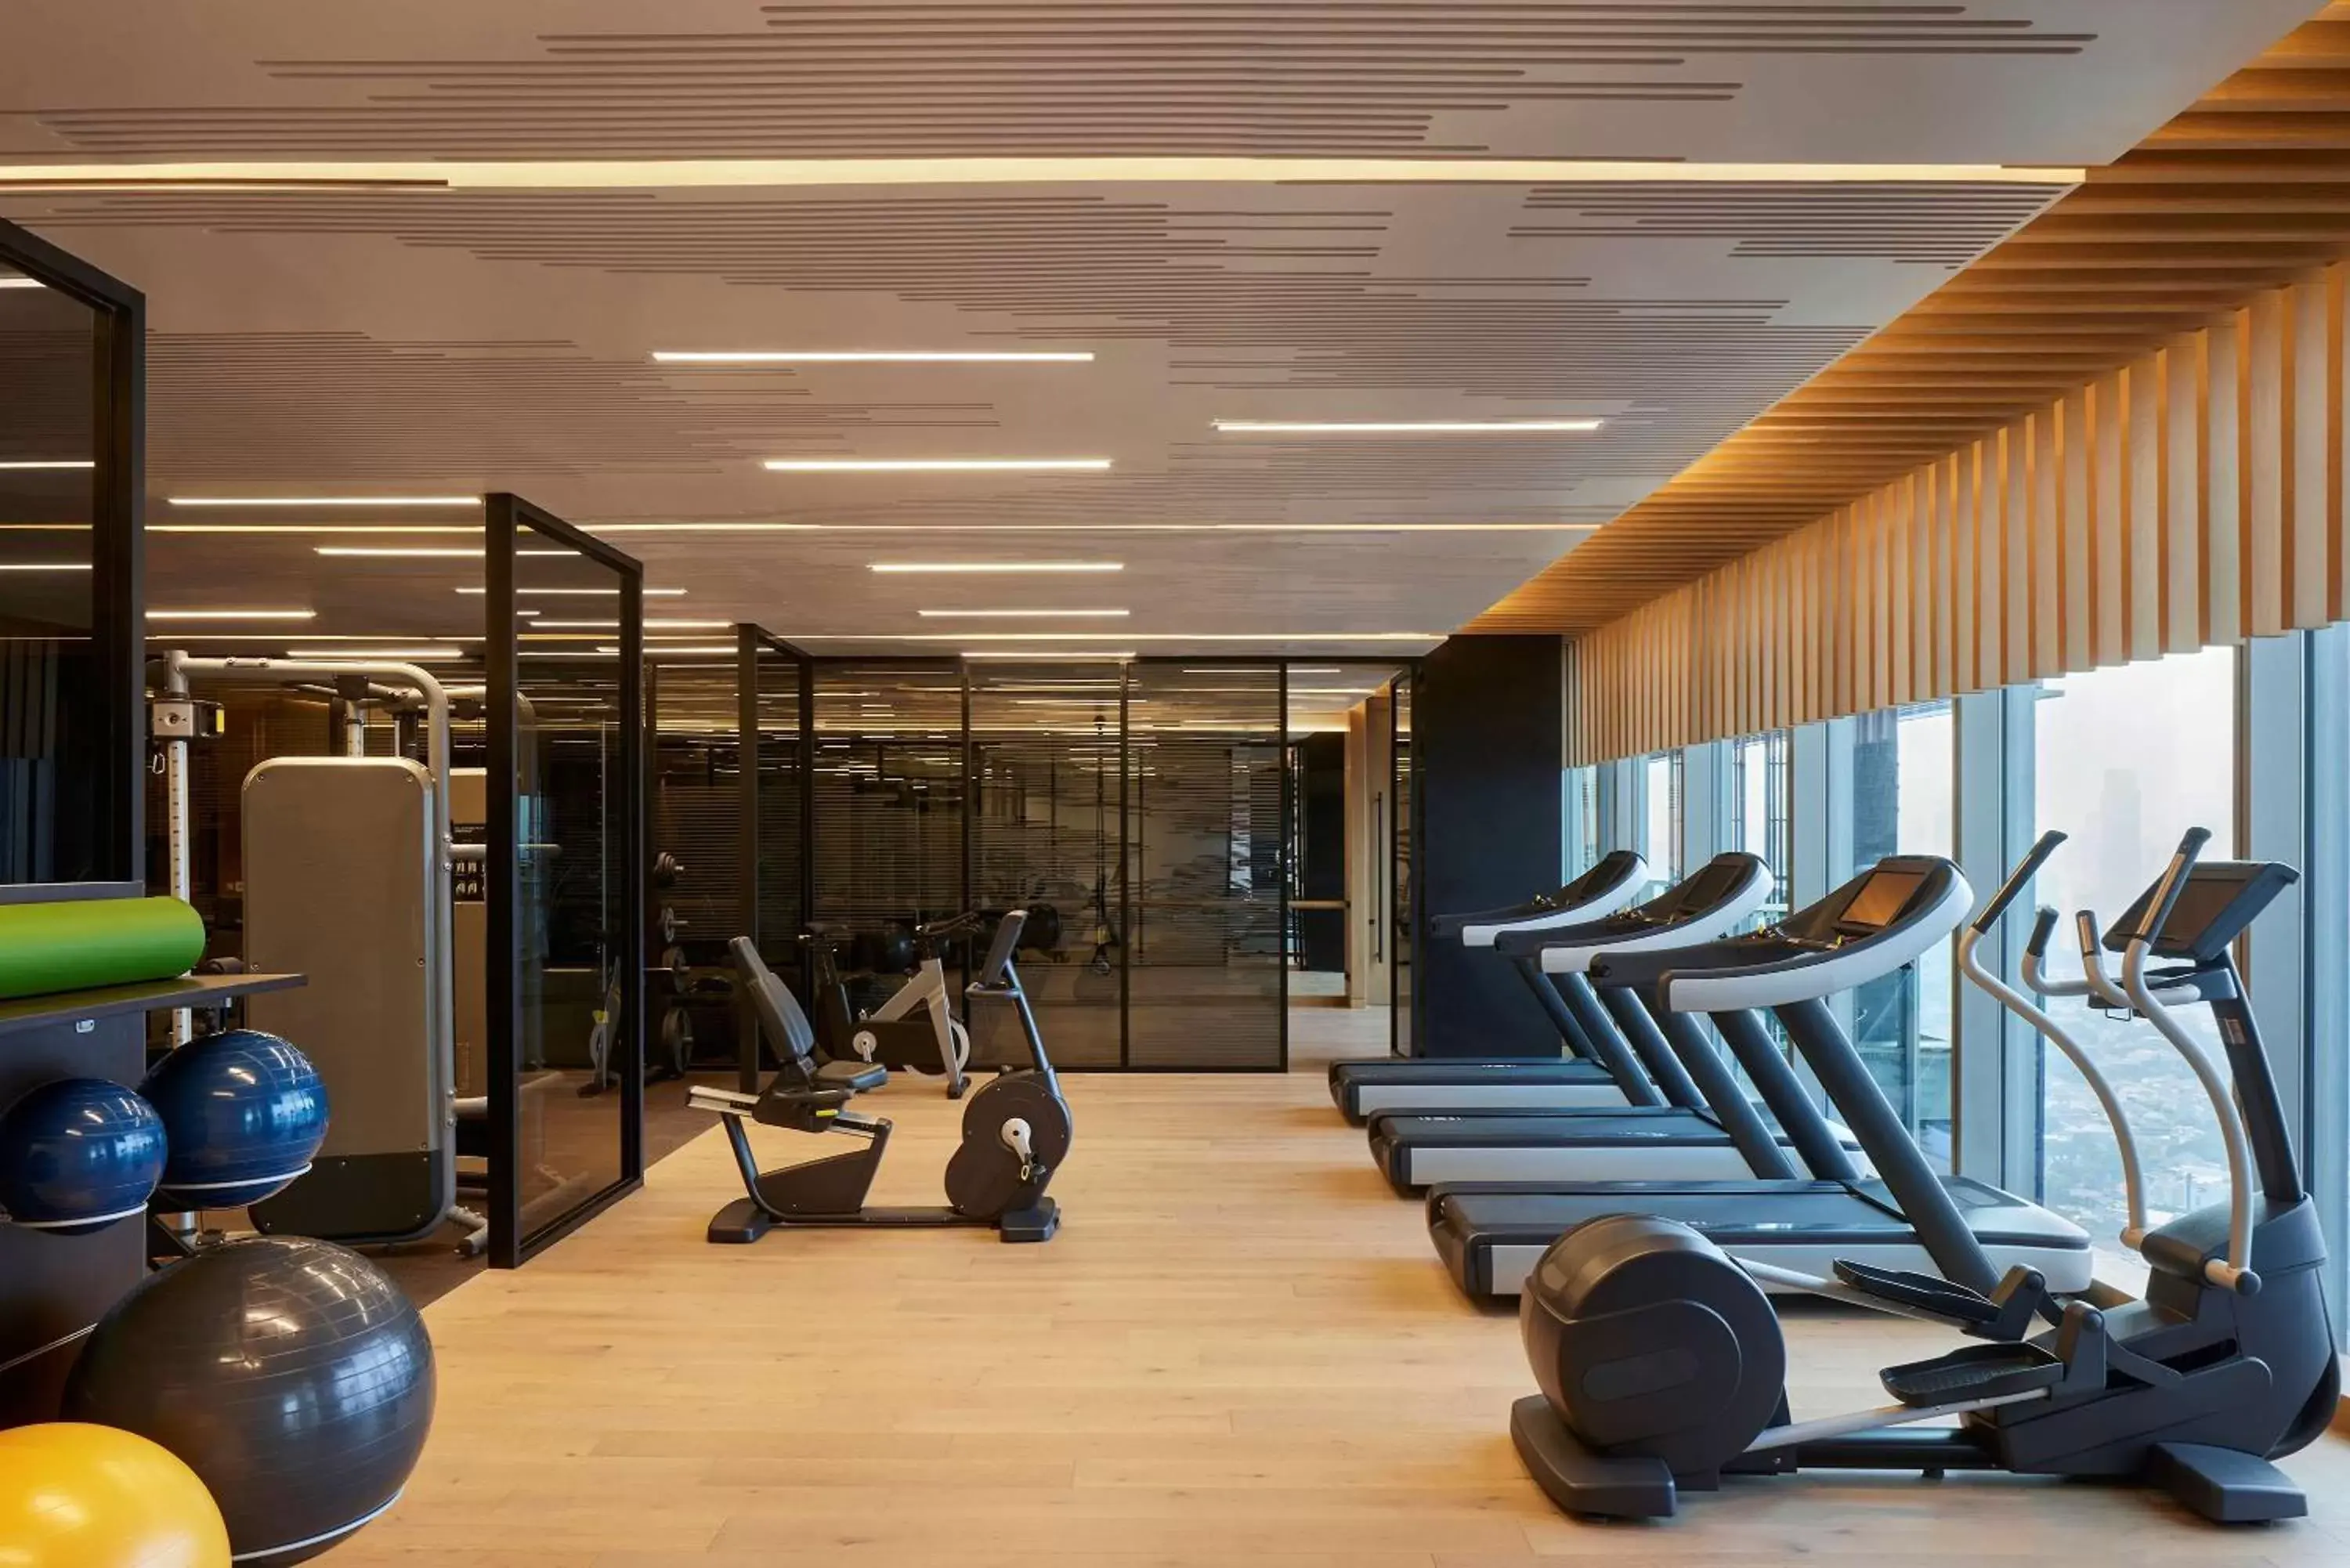 Fitness centre/facilities, Fitness Center/Facilities in Park Hyatt Jakarta